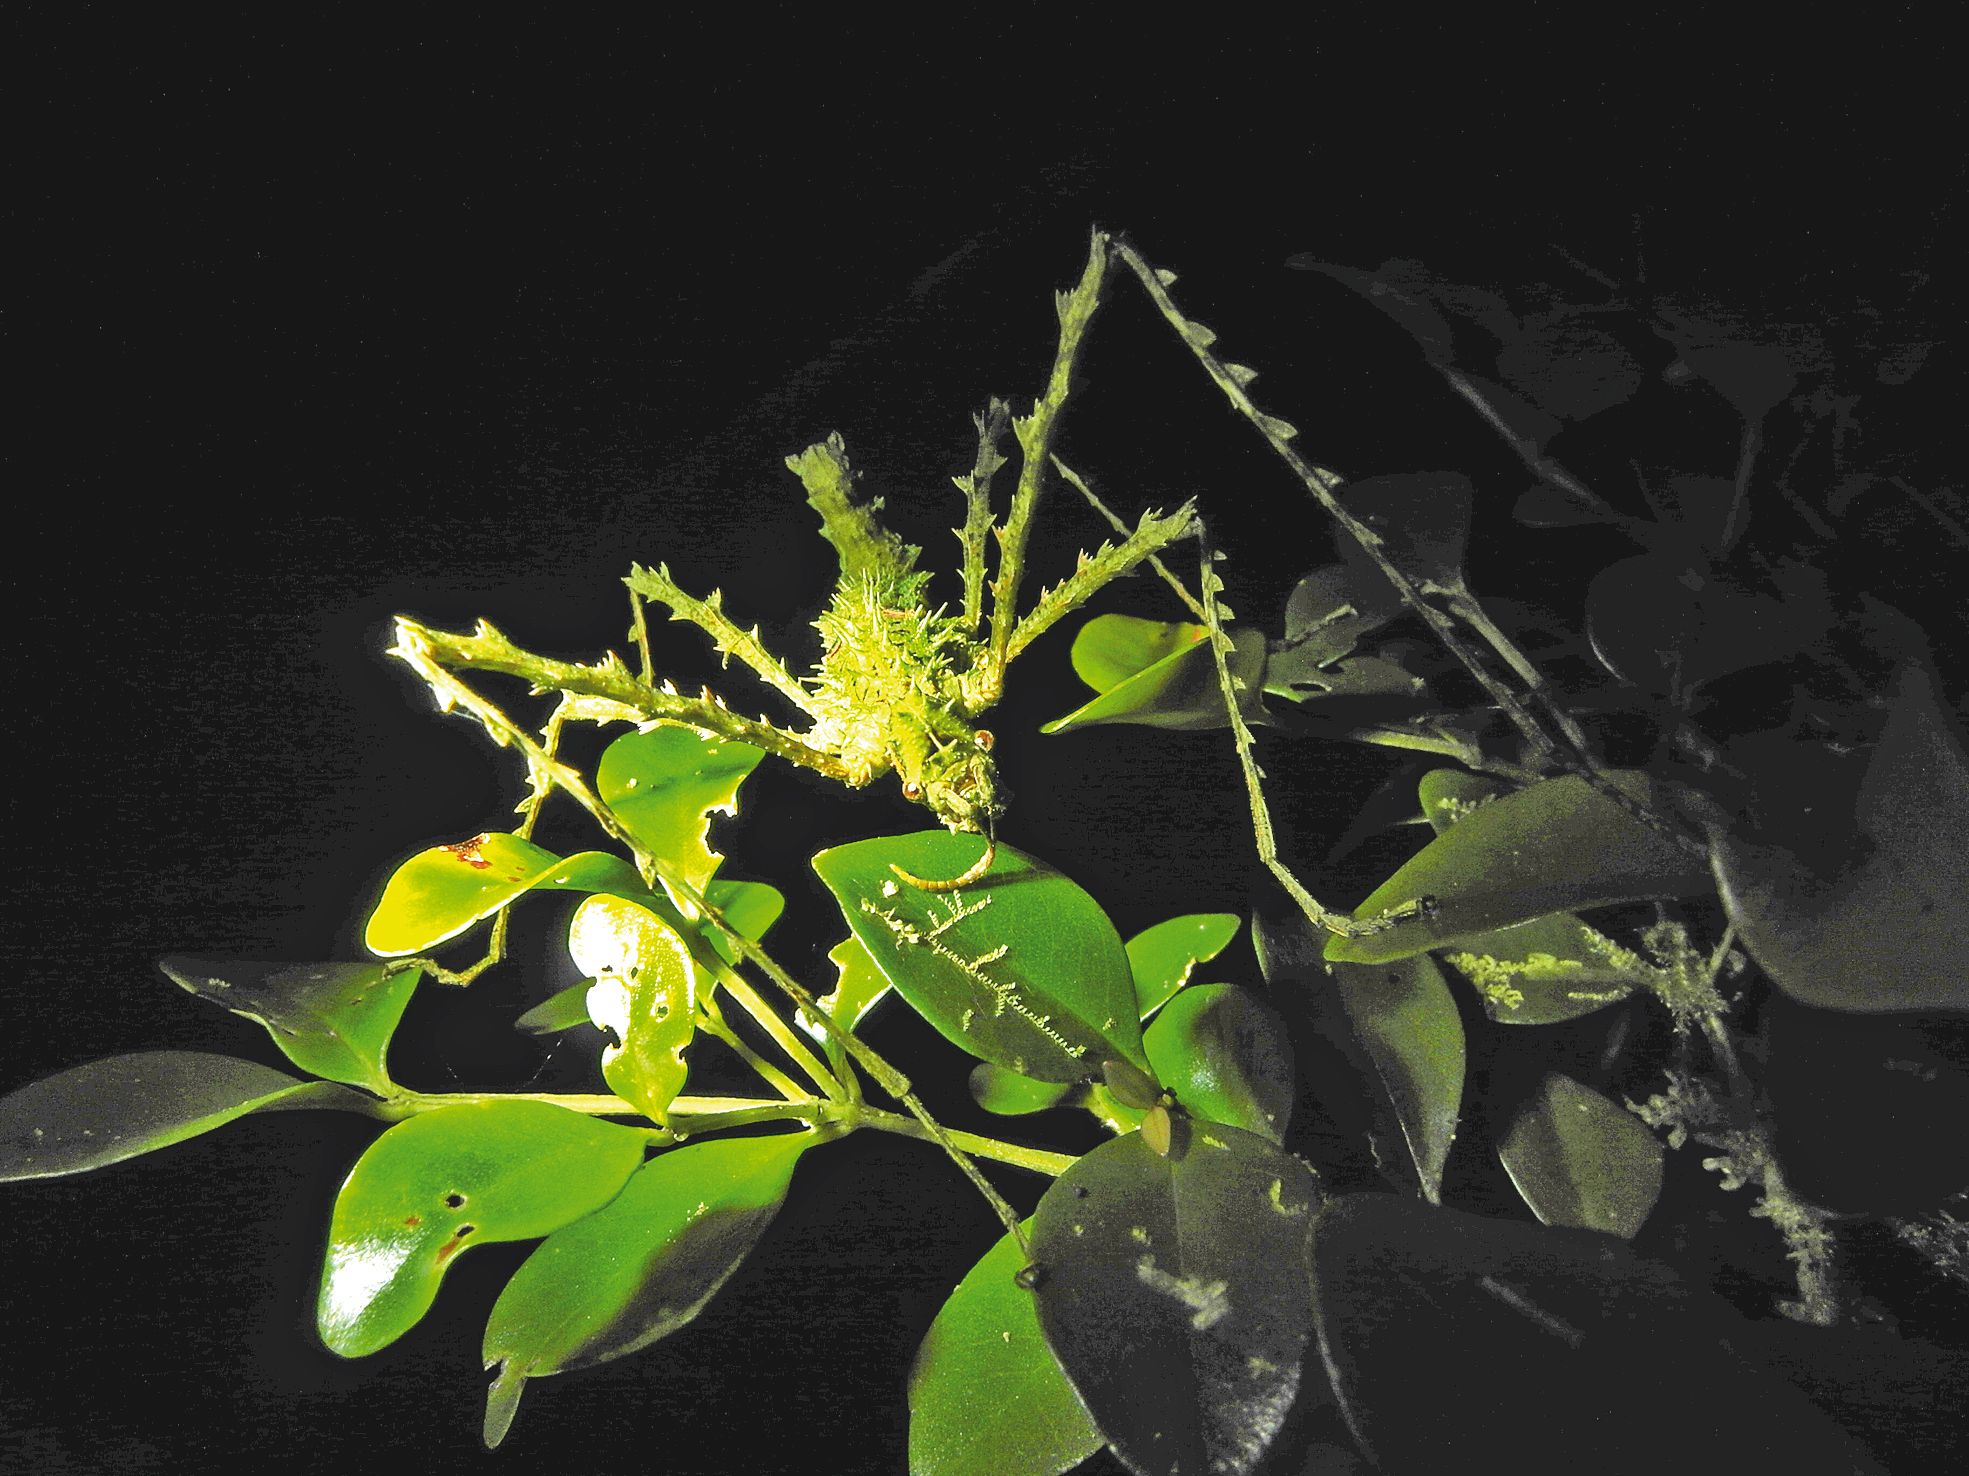 Un Cnipius hyrta, ou phasme, observé par les entomologistes de l’équipe d’Olivier Pascal. Deux nouvelles espèces de phasmes ont été identifiées dans les forêts de la Côte oubliée.